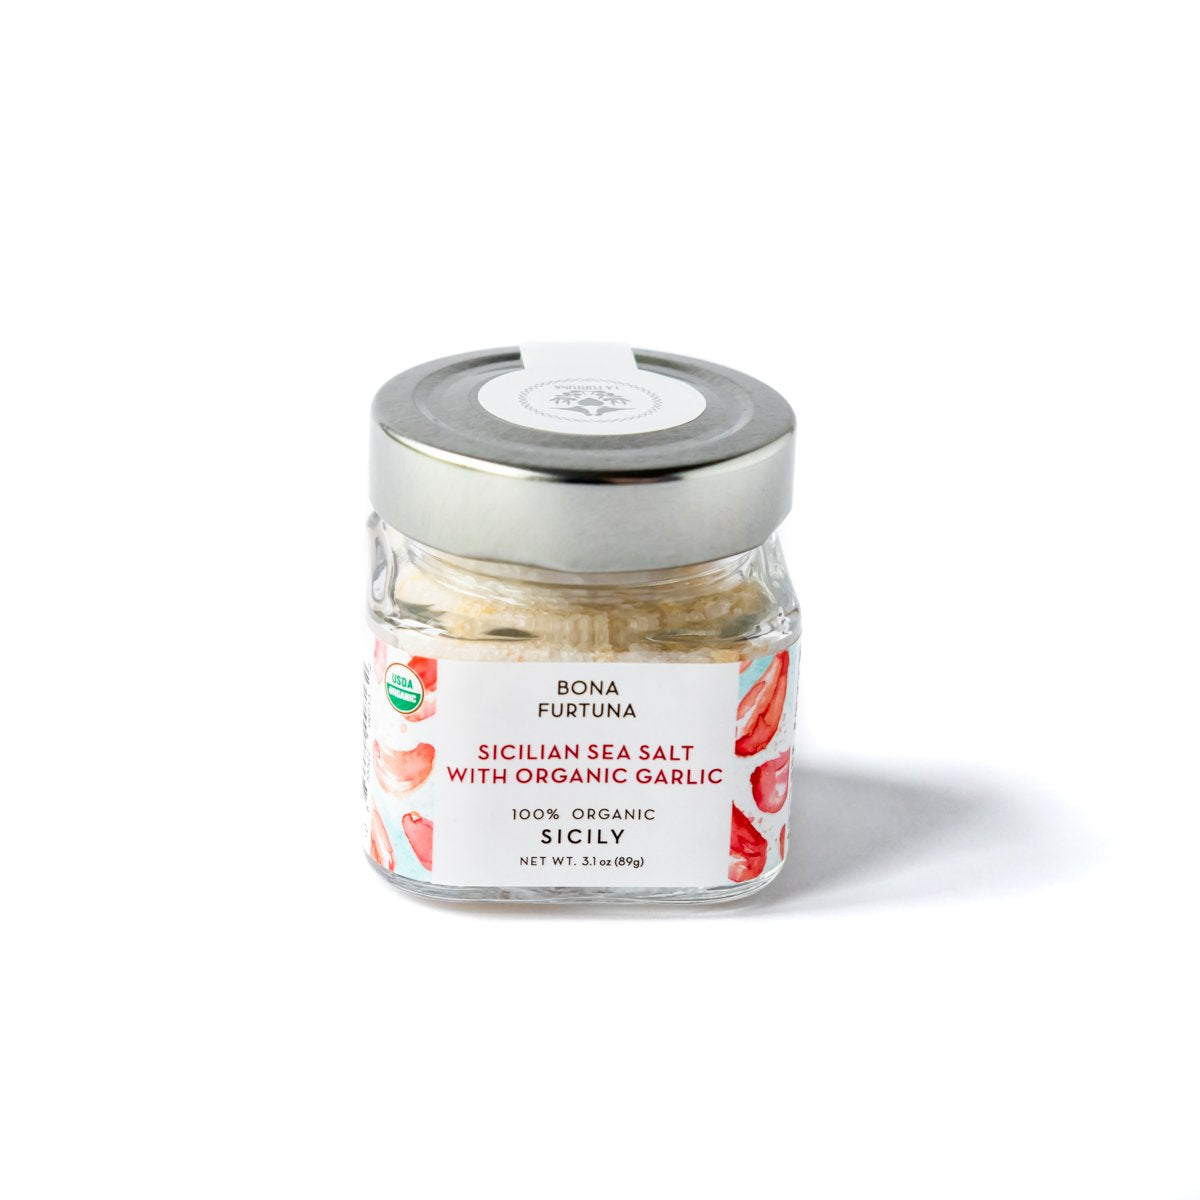 Sicilian Sea Salt with Organic Garlic